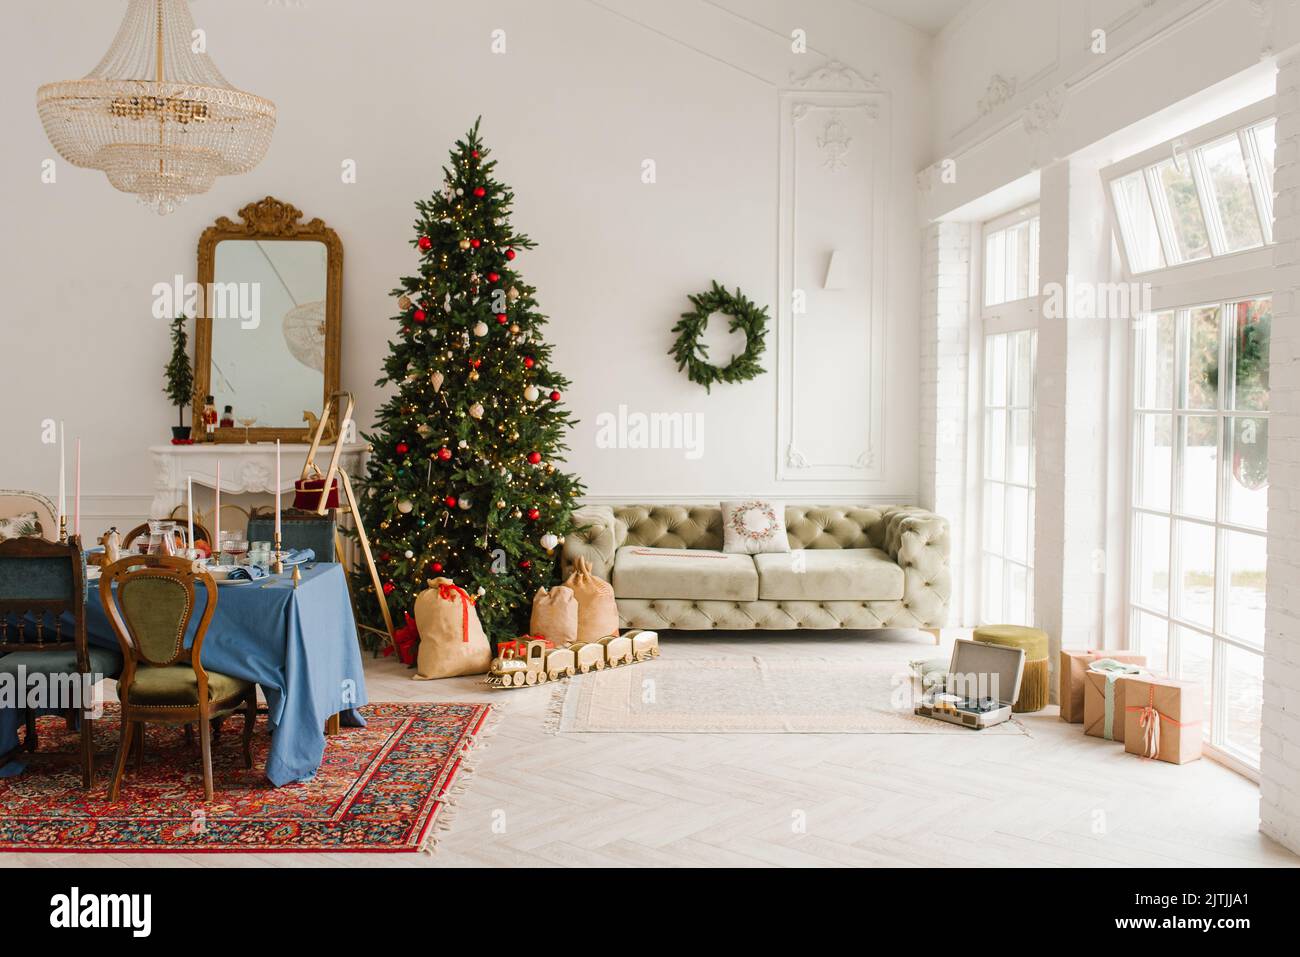 El interior clásico de Navidad de Año Nuevo de la habitación está decorado con un árbol de Navidad. Árbol de Navidad con adornos dorados y rojos y cajas de regalo. Chris Foto de stock